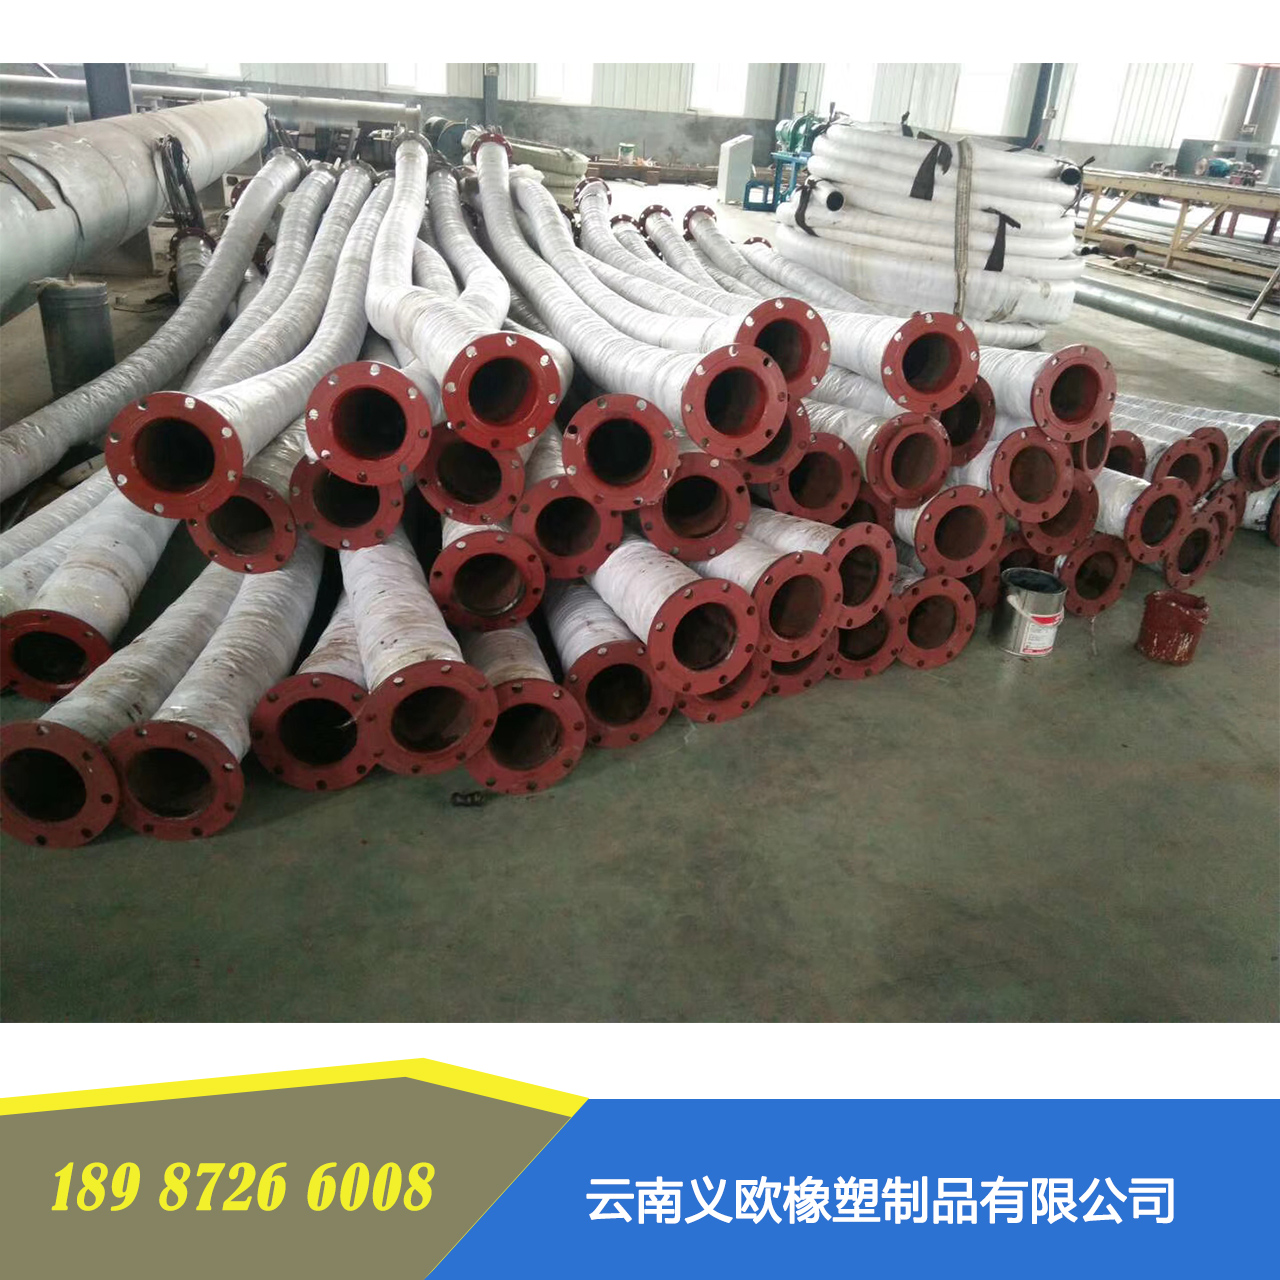 云南橡胶软管生产厂家 橡胶软管价格